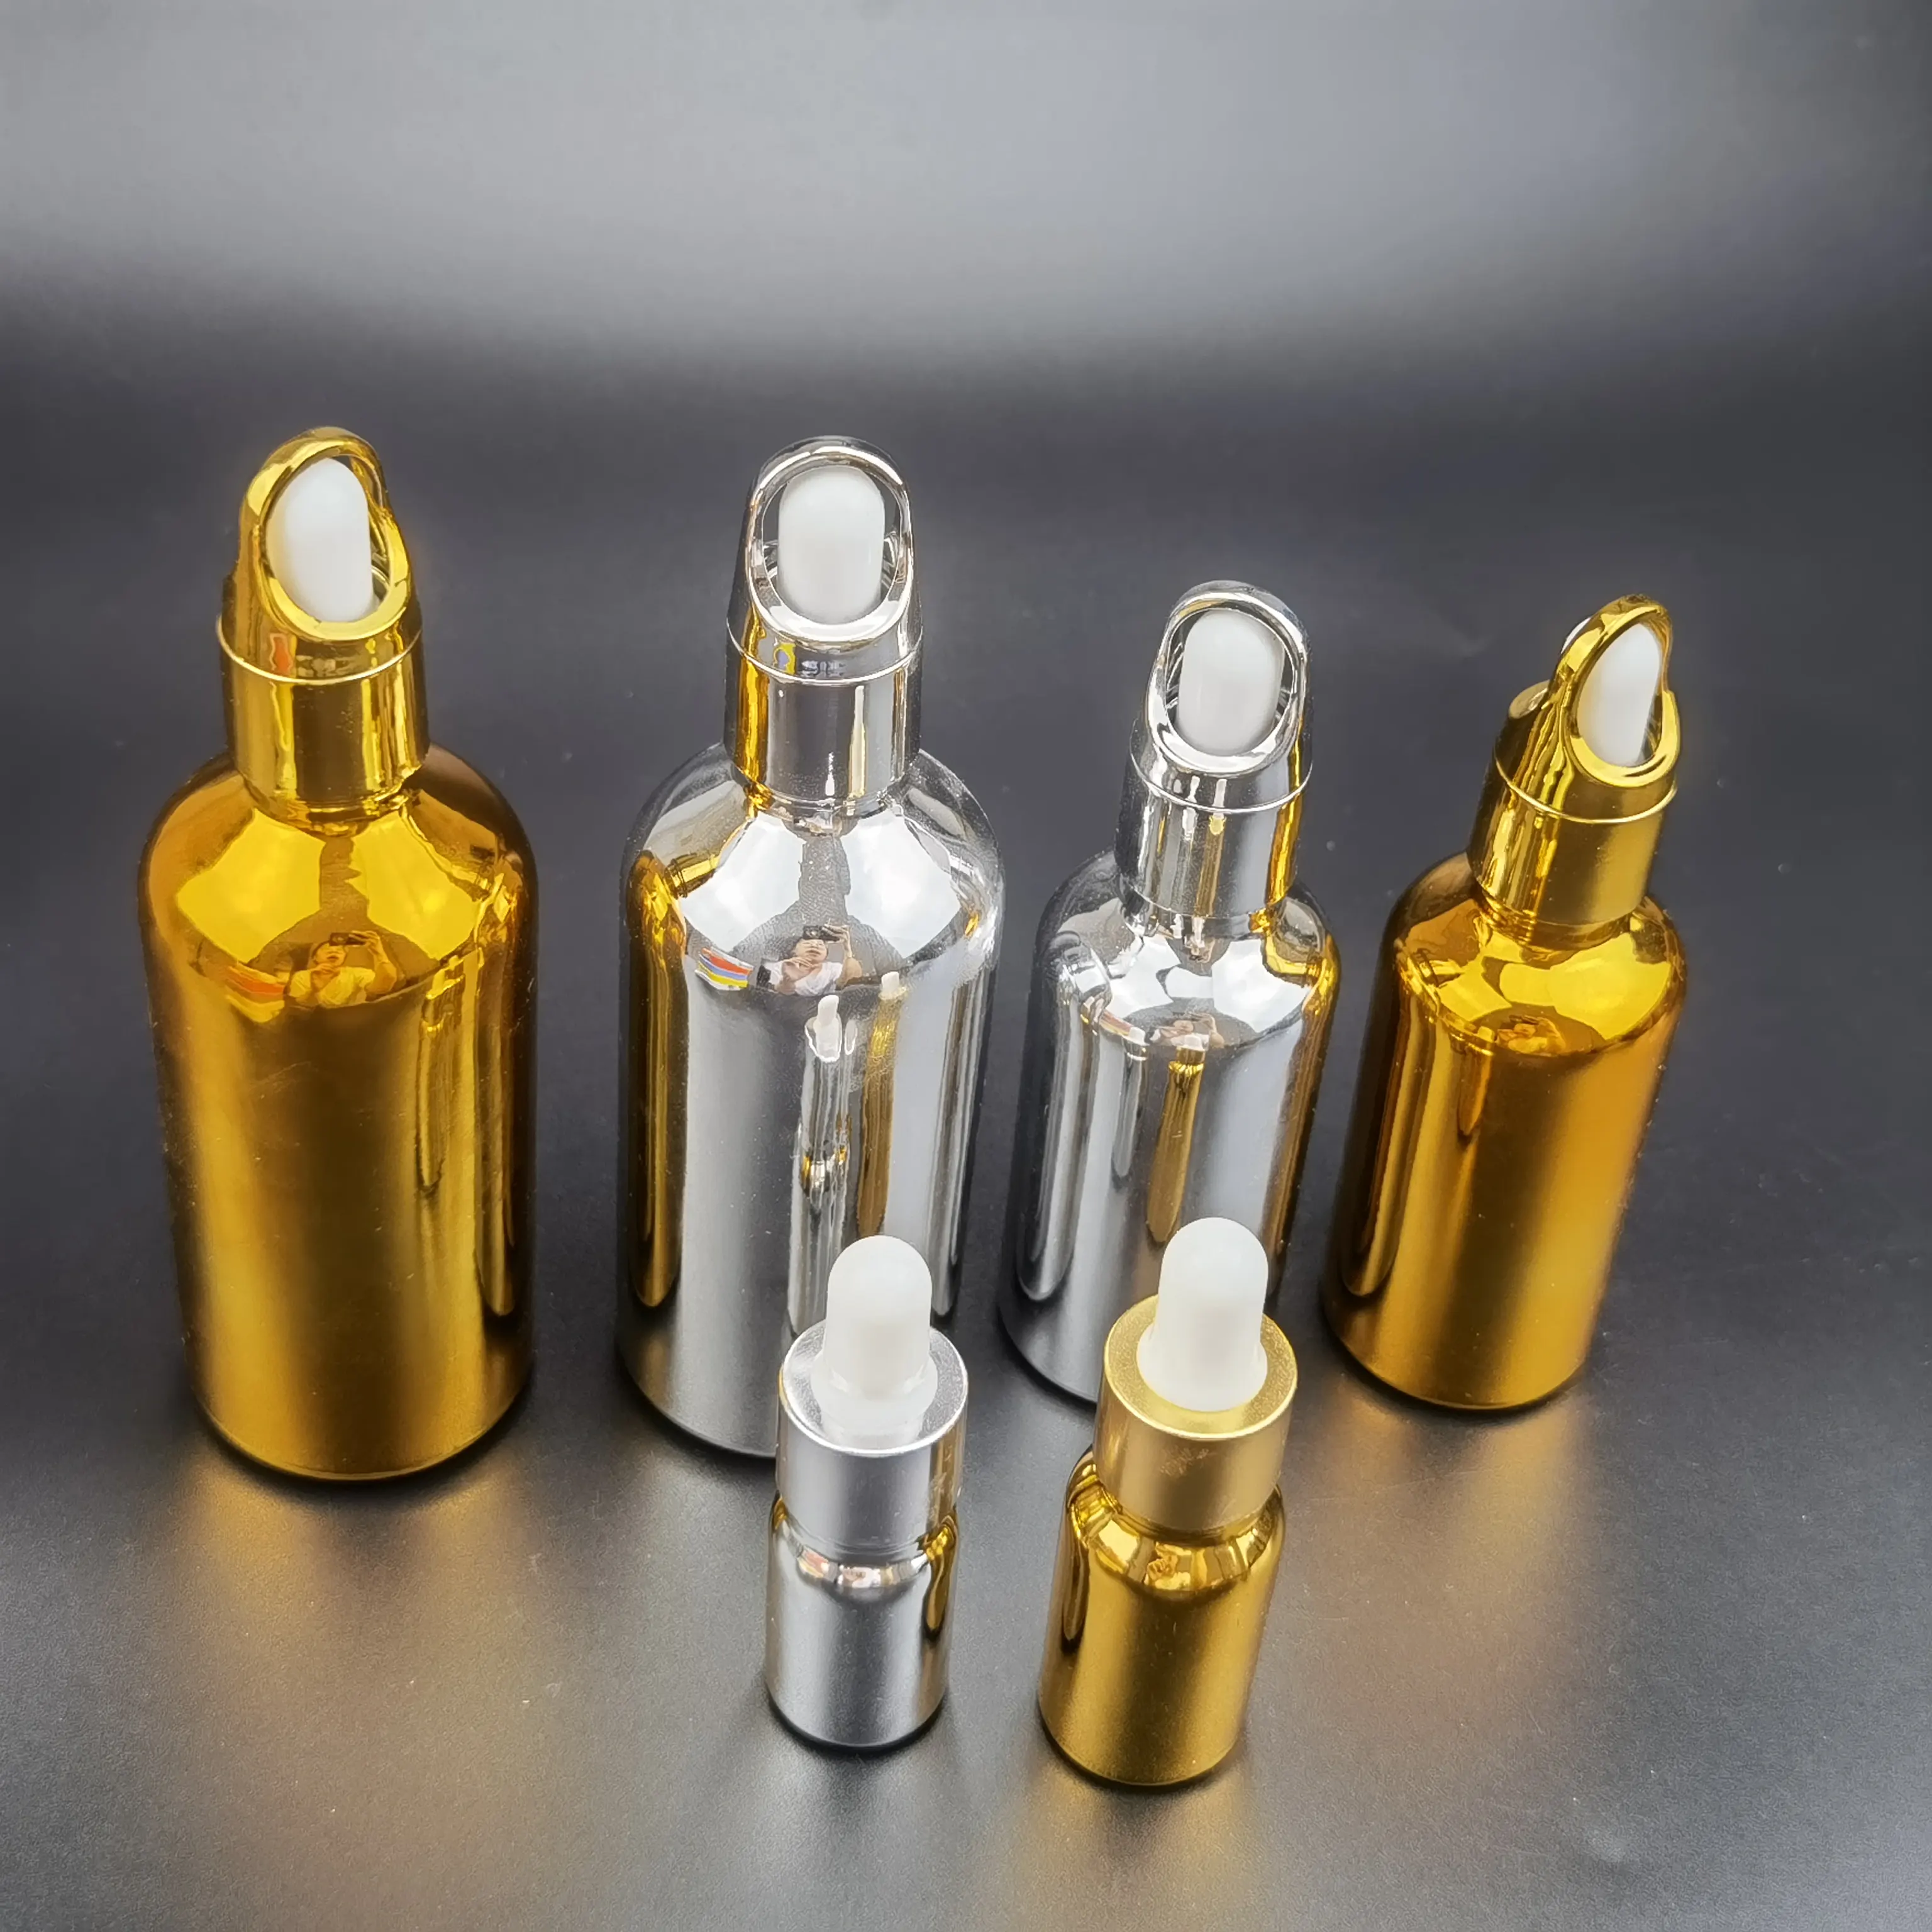 Behälter mit ätherischen Ölen 30ml leere UV-Gold beschichtung Schnapsglas-Tropf flasche mit Gummi